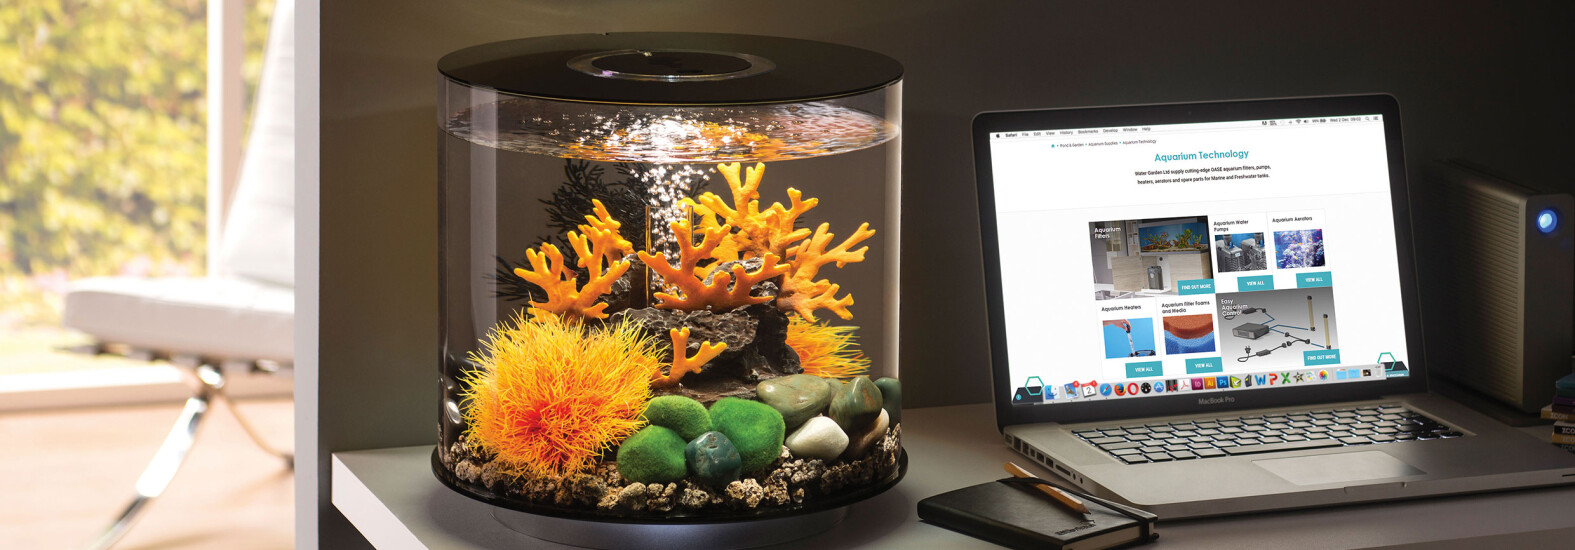 Aquarium Technology